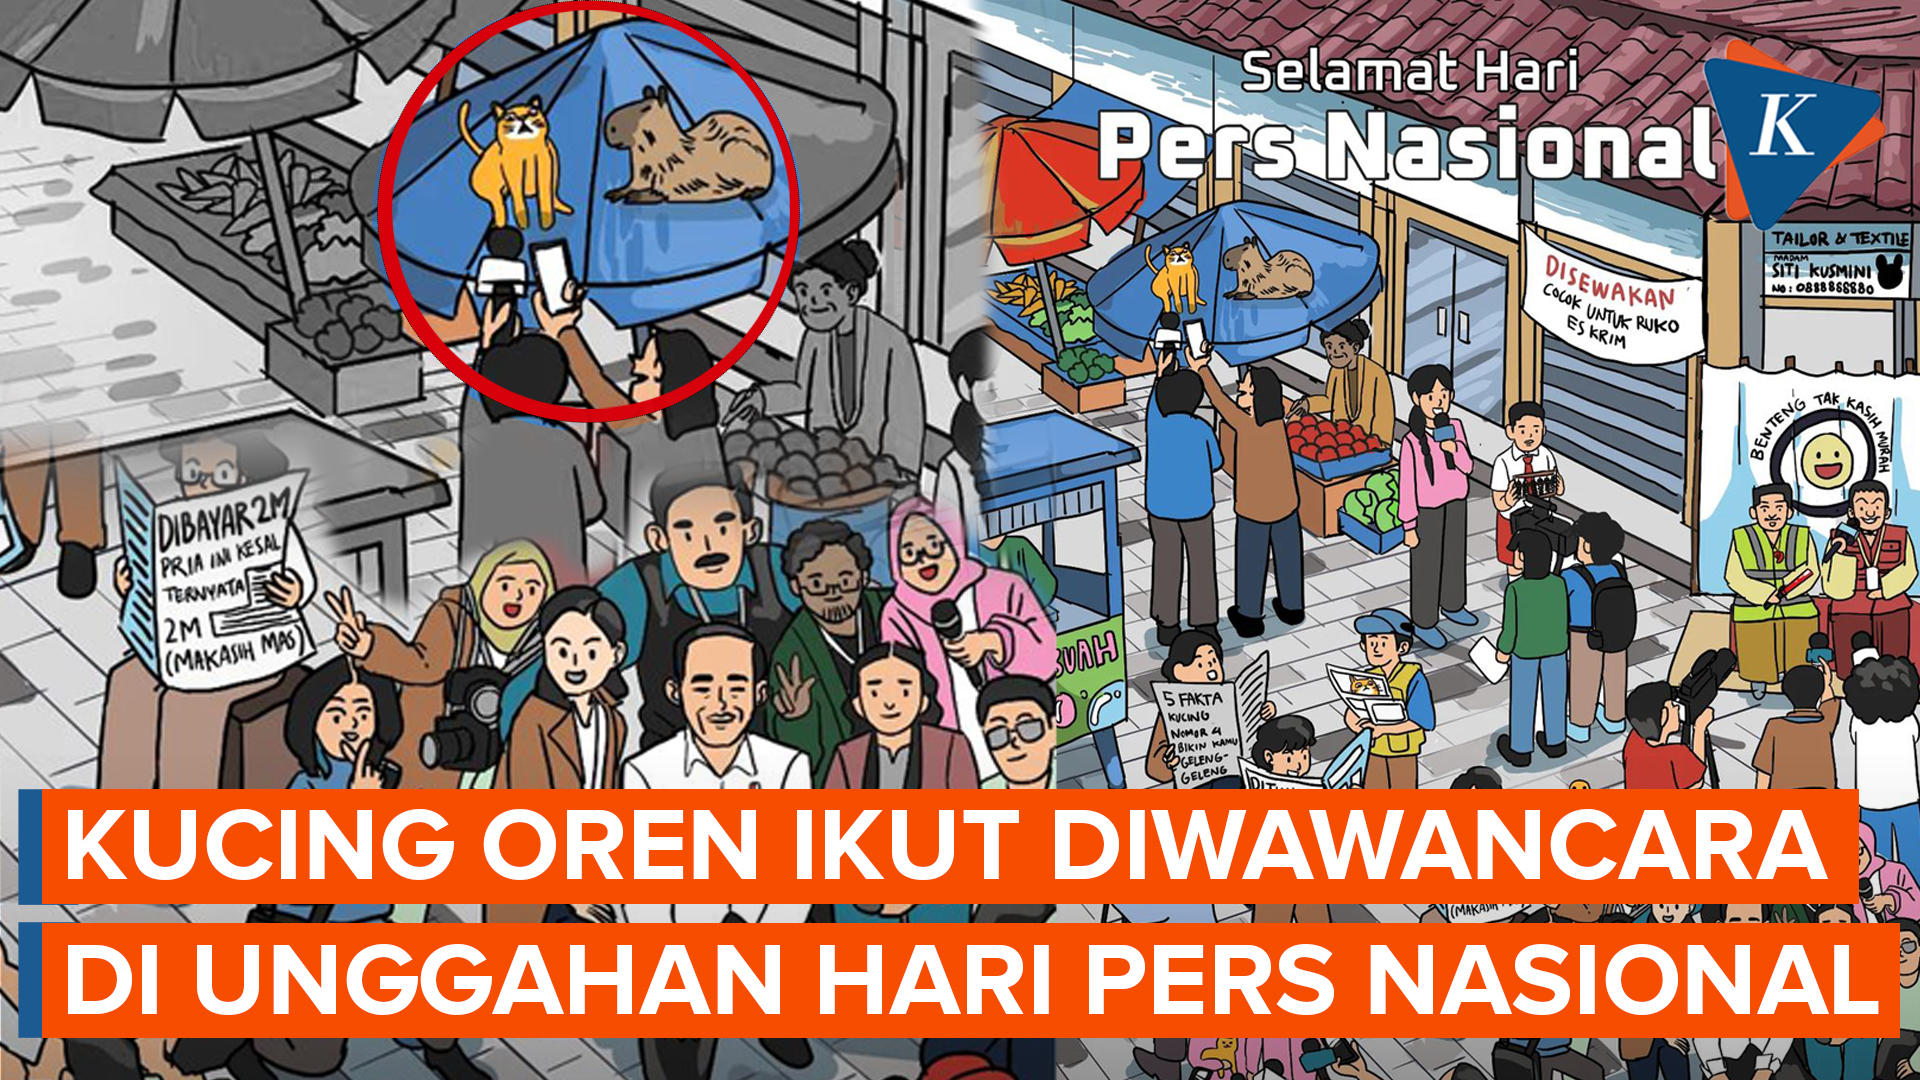 Jokowi Unggah Poster Selamat Hari Pers Nasional, Kucing Oren Ikut Diwawancara